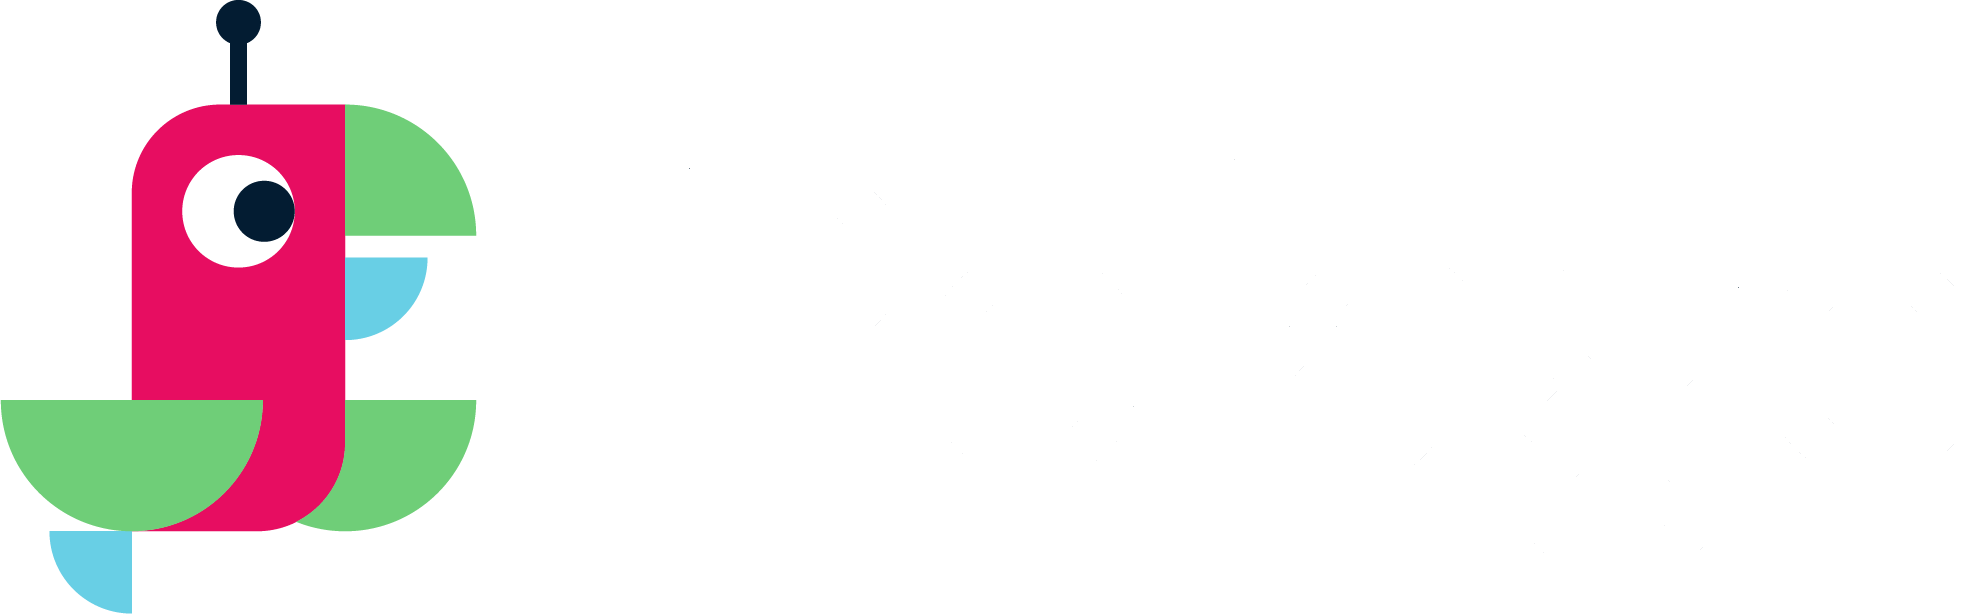 pelago_logo_full-logo_full-colour.png